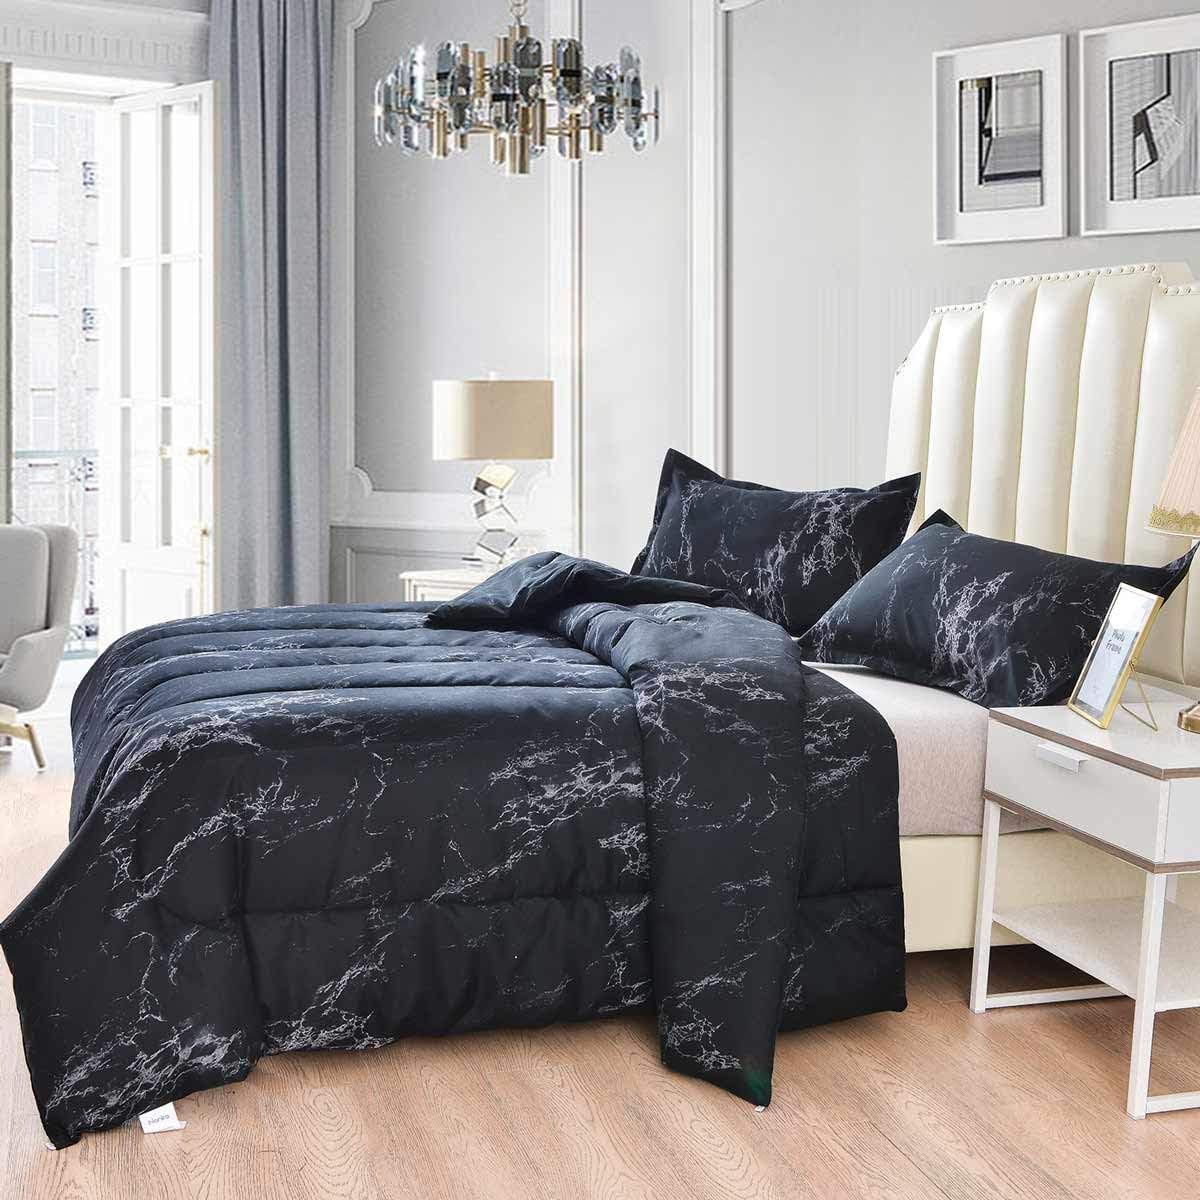 Nanko Comforter Set Queen Size Dark, 88 X 90 Duvet Cover